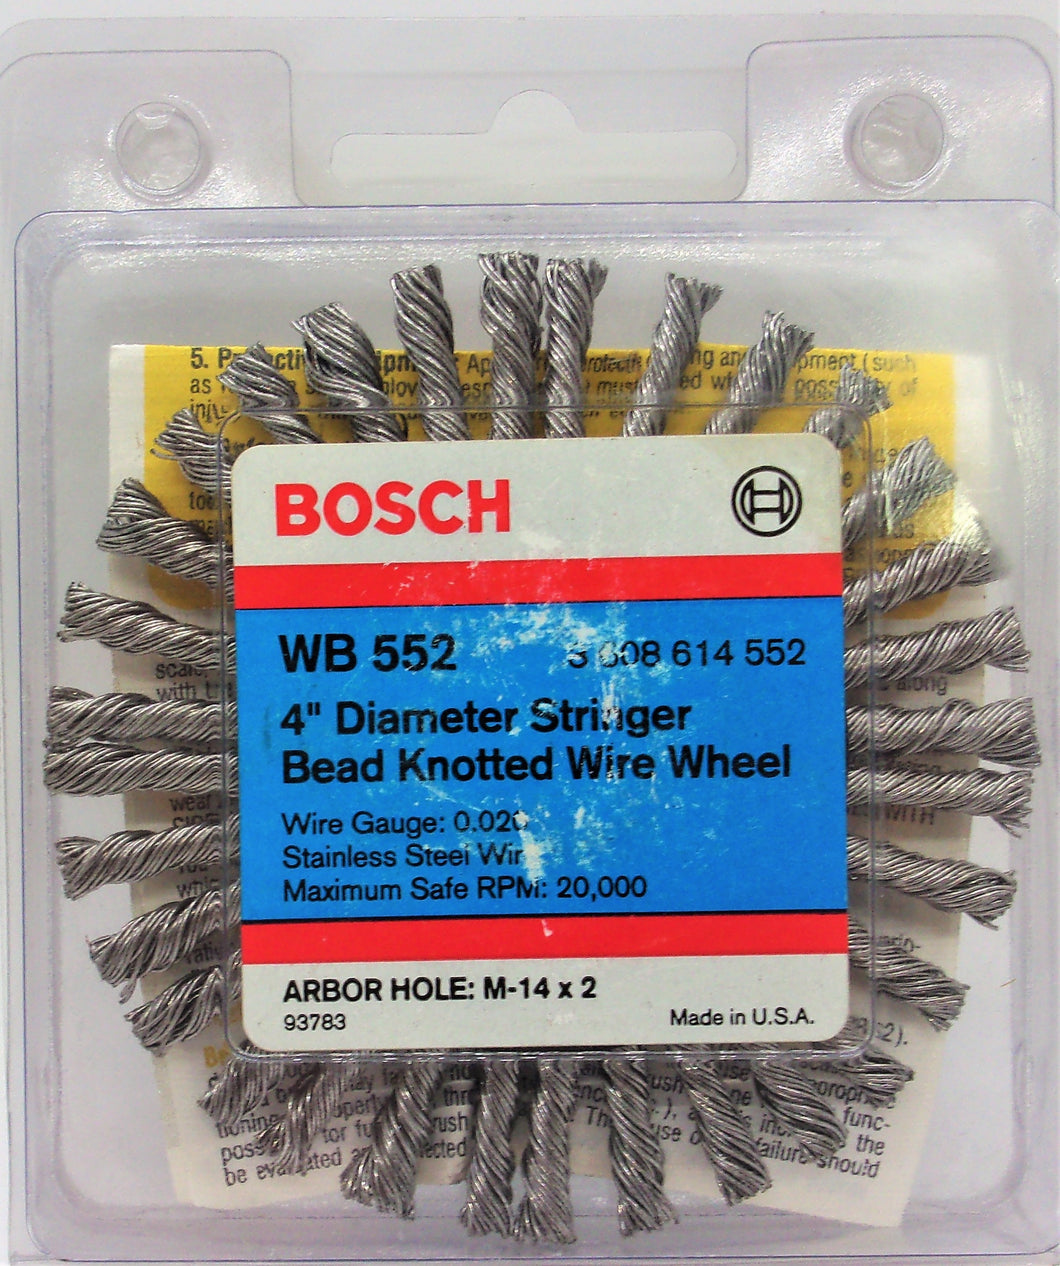 Bosch WB 552 Rueda de alambre anudado con talón de 4